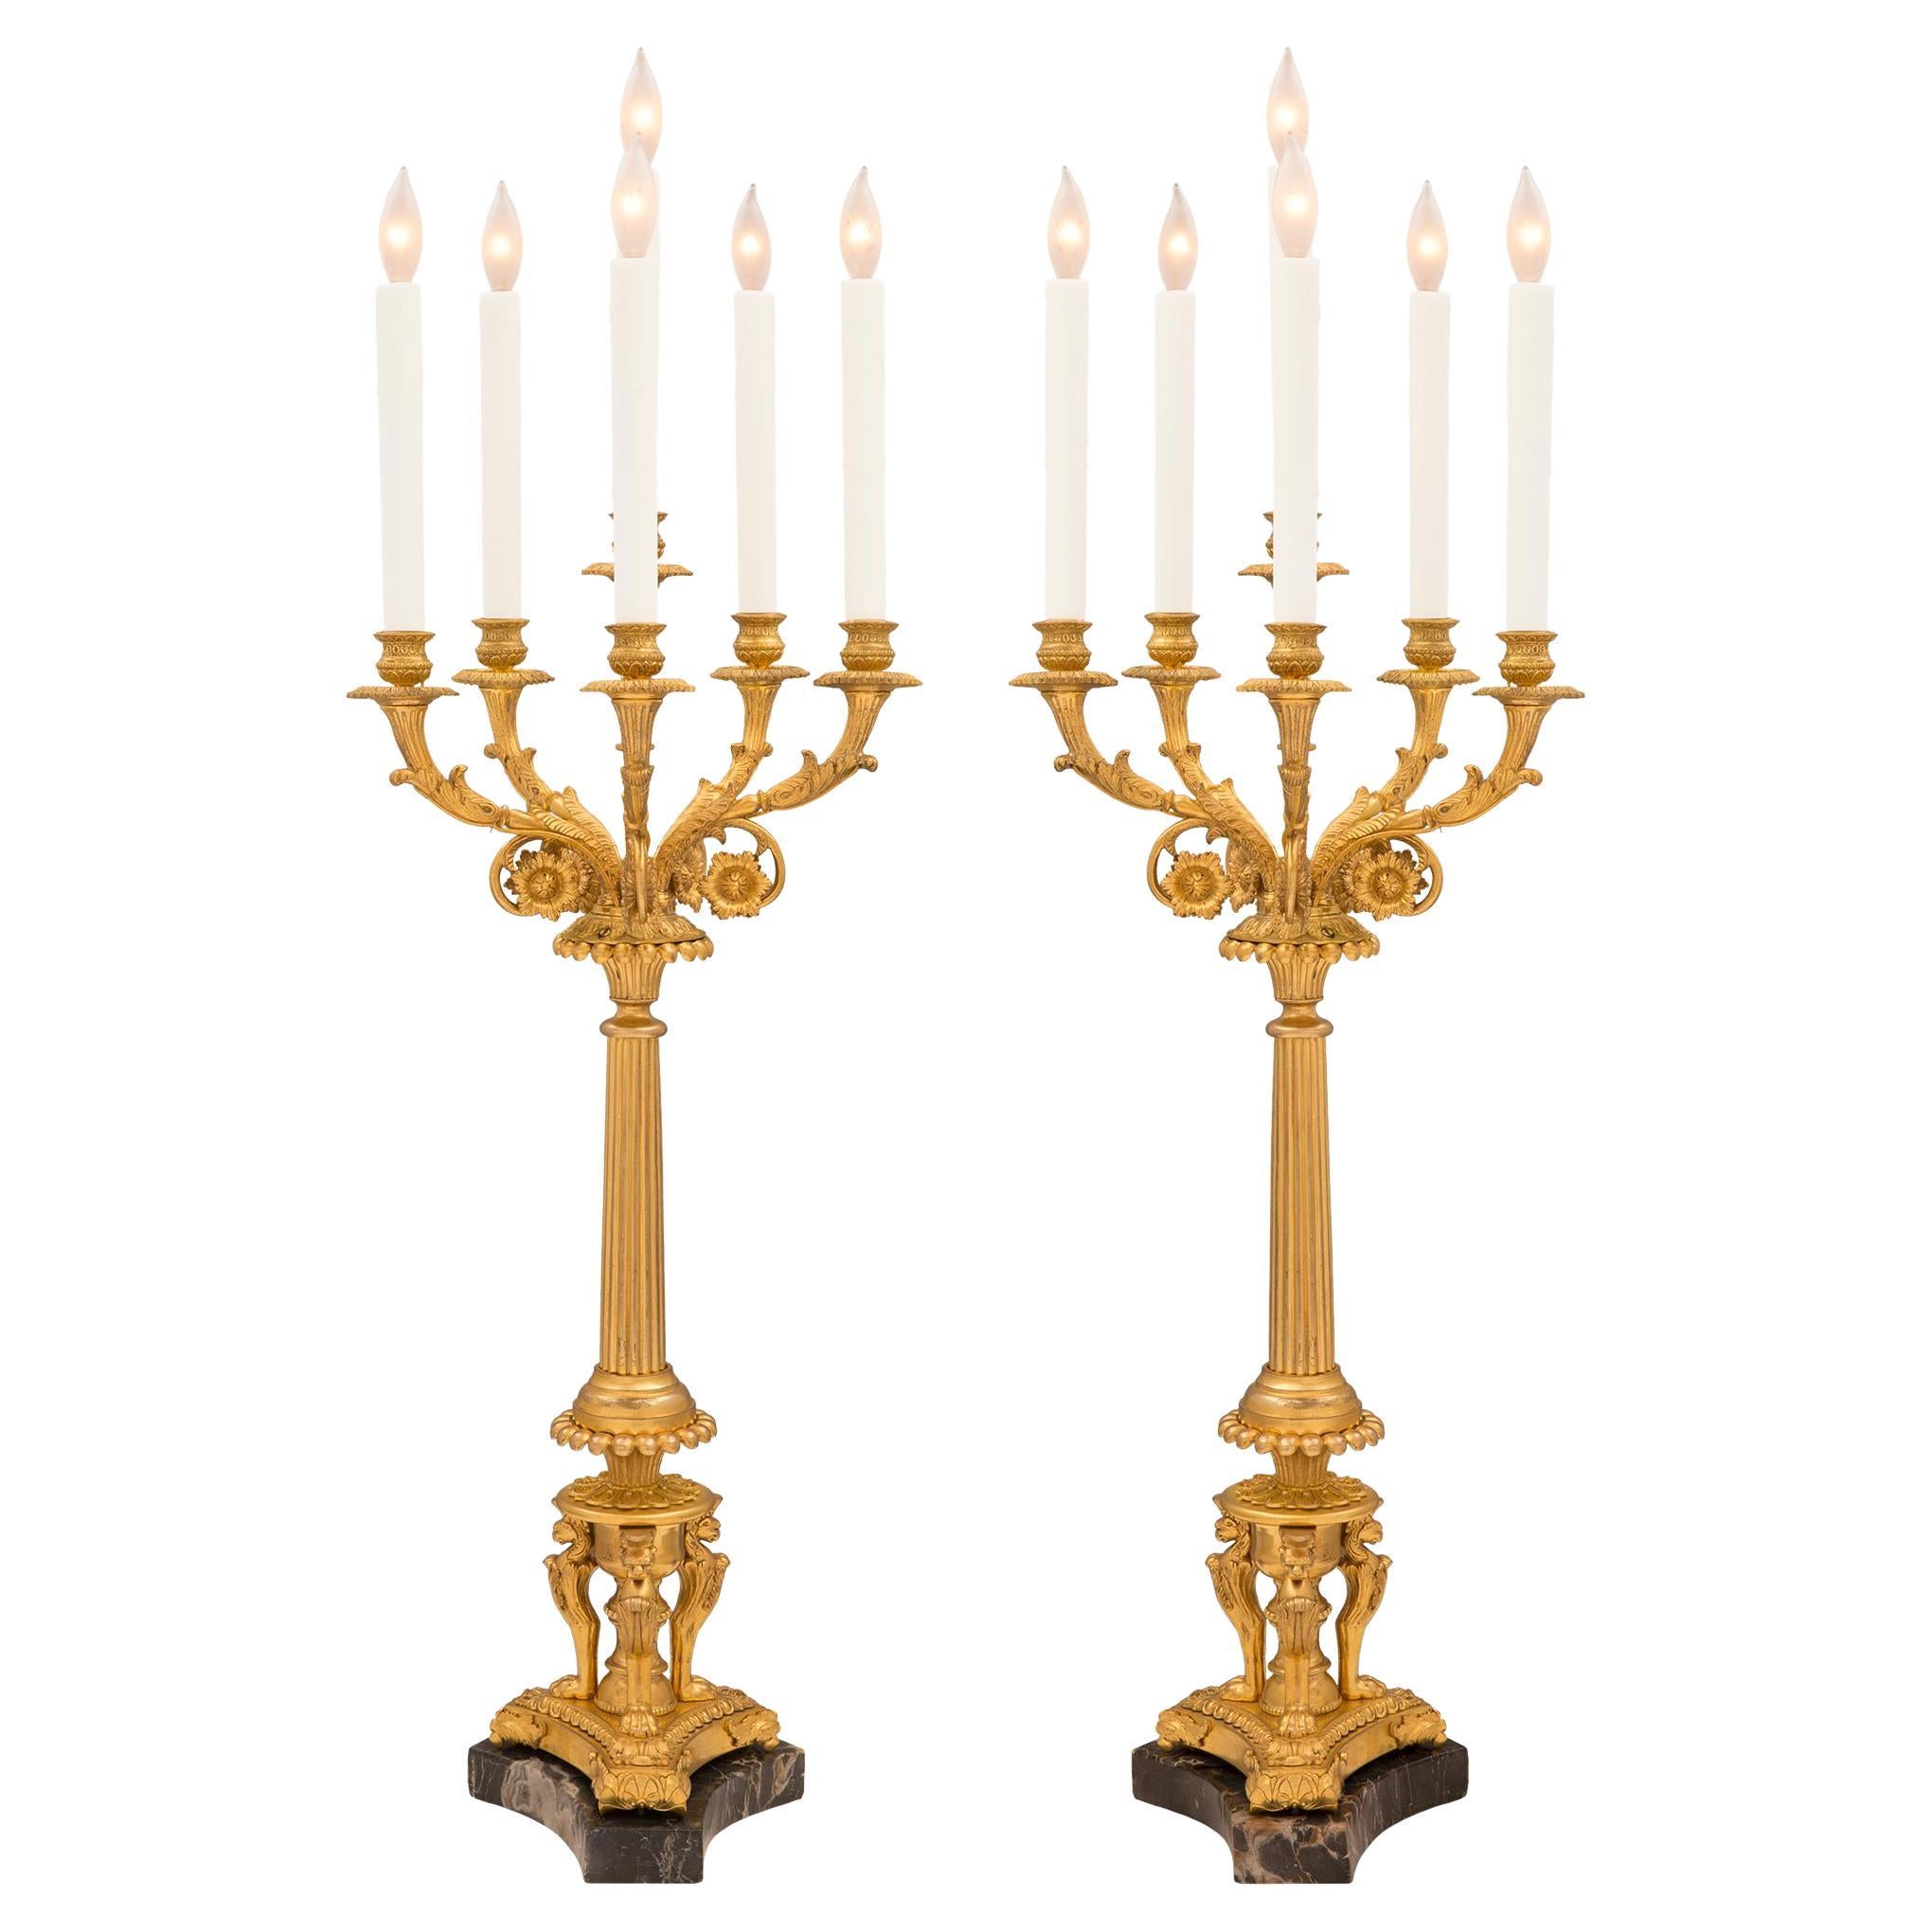 Paire de candélabres en bronze doré de style Empire du milieu du XIXe siècle français